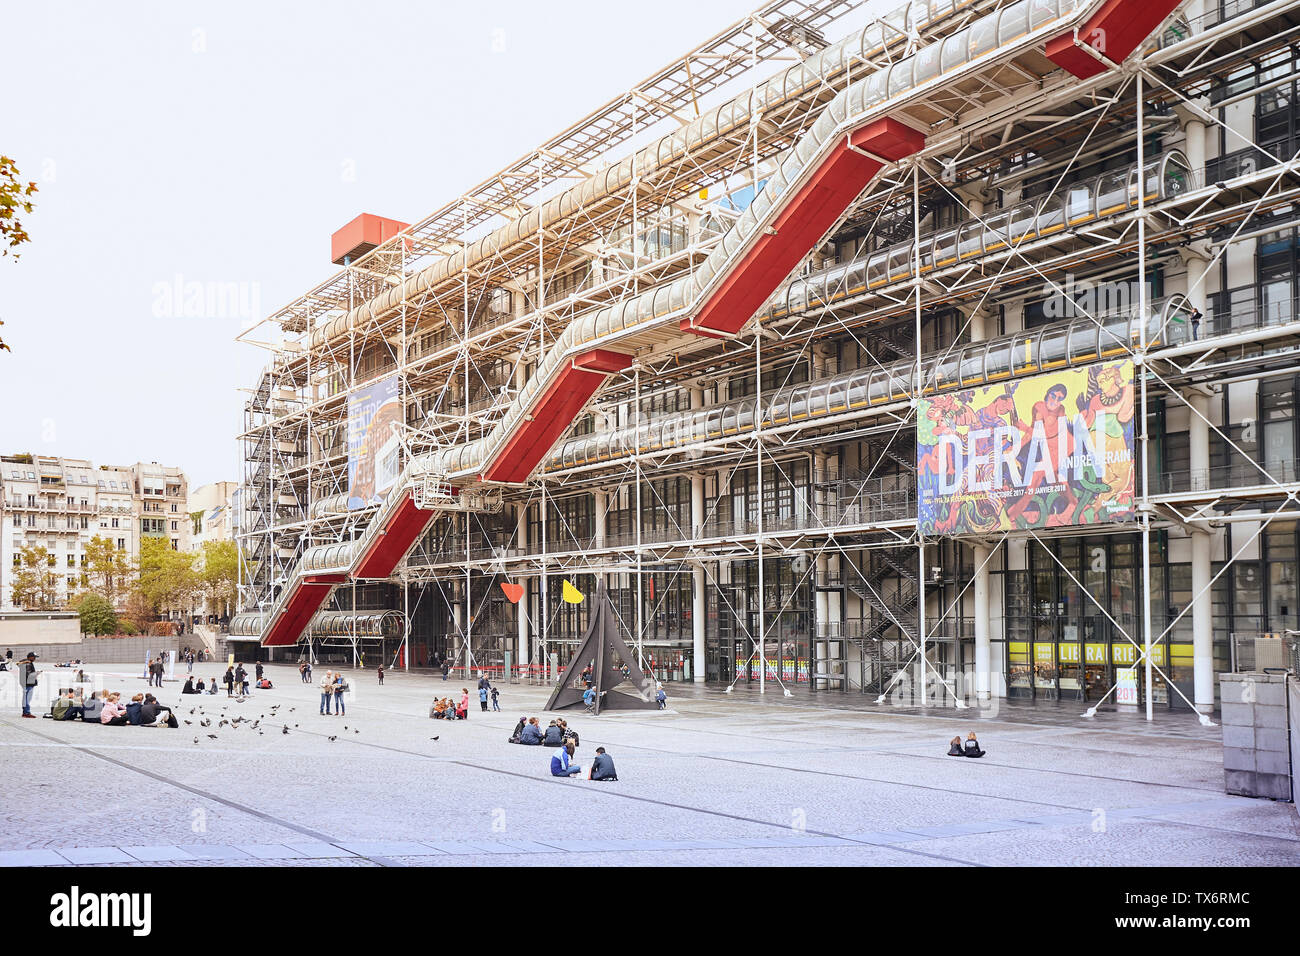 PARIS, FRANCE - 24 octobre 2017 : Façade du Centre de Georges Pompidou - Musée d'Art moderne, a été conçu dans le style de l'architecture high-tech Banque D'Images